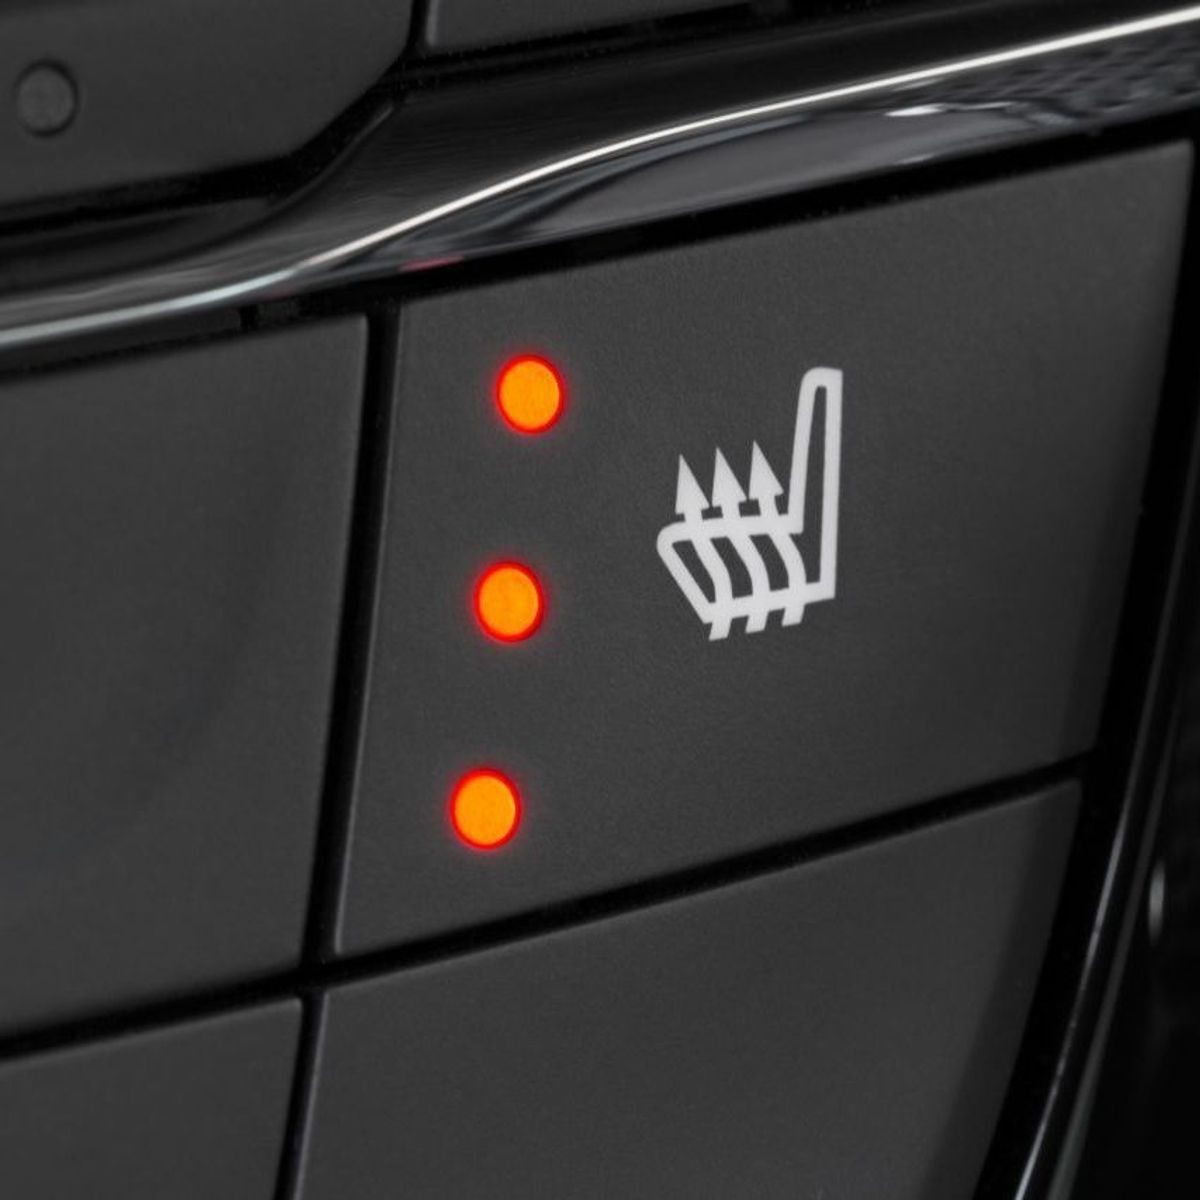 Mikrotransaktionen in Fahrzeugen: BMW bietet Sitzheizung im Abonnement